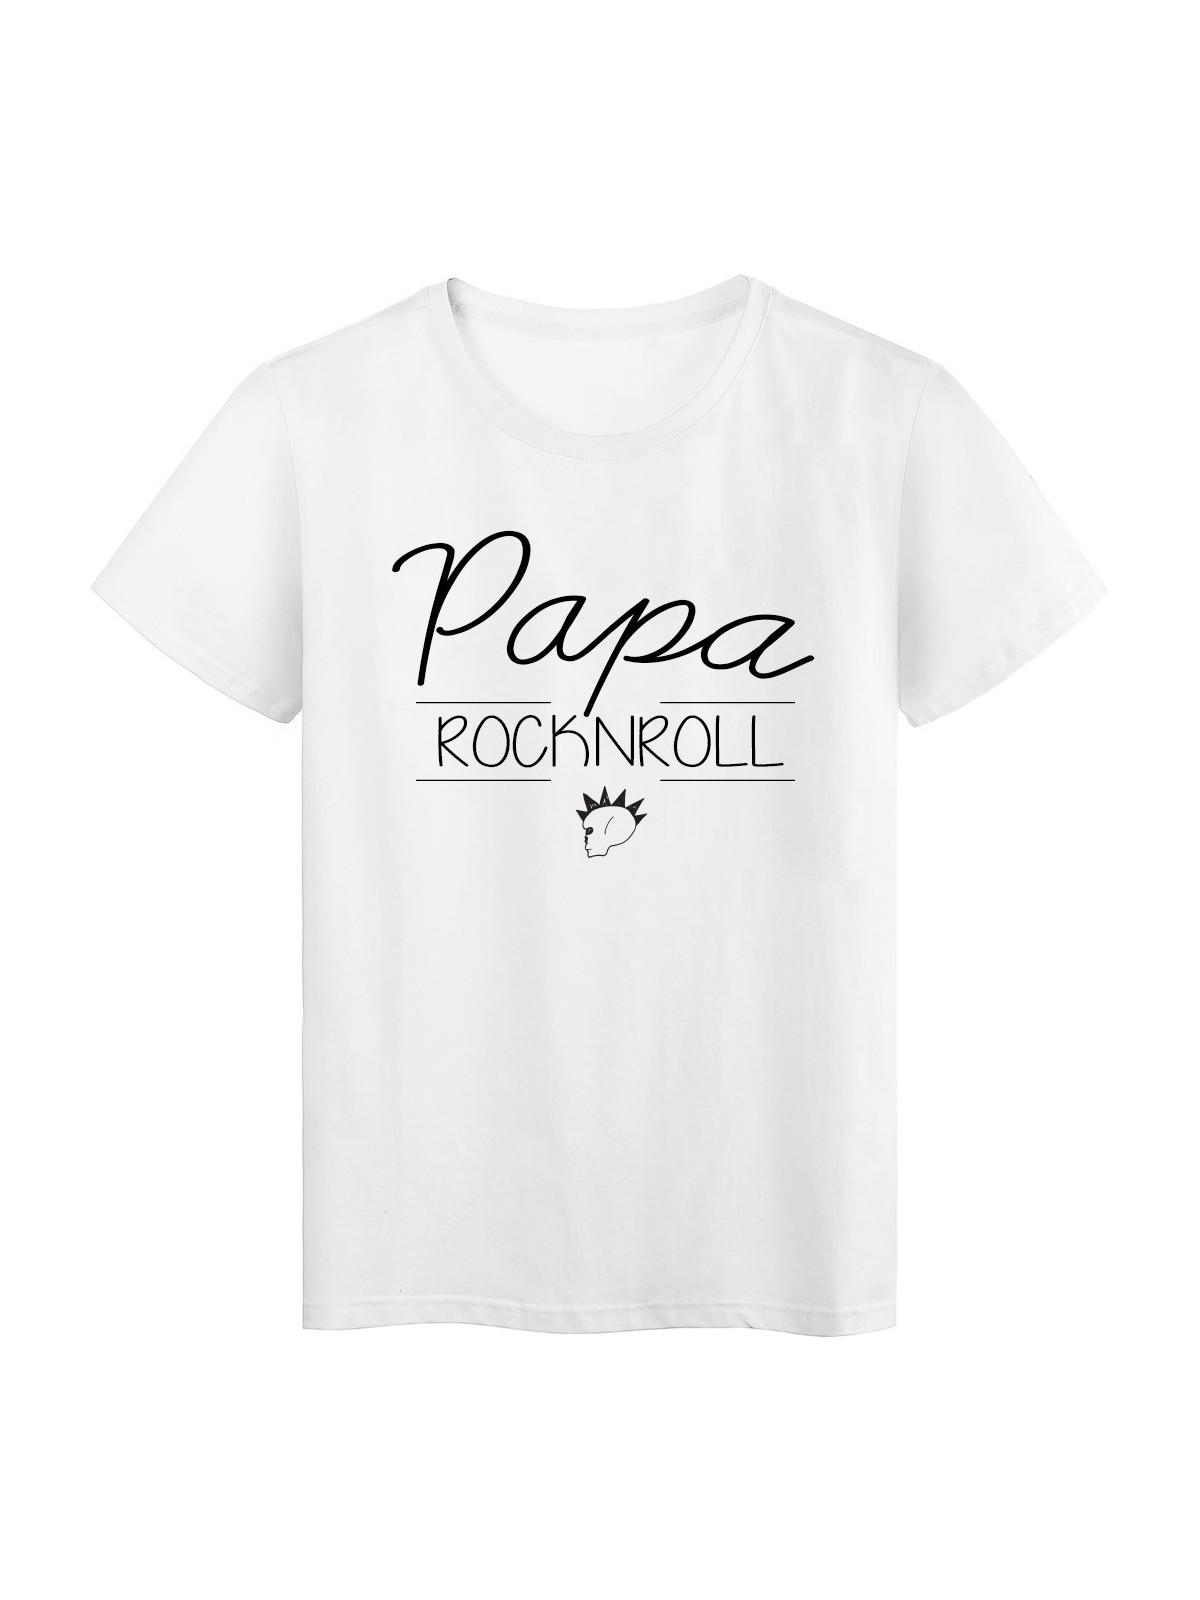 T-Shirt imprimÃ© humour design Papa Rock n roll rÃ©f 2197